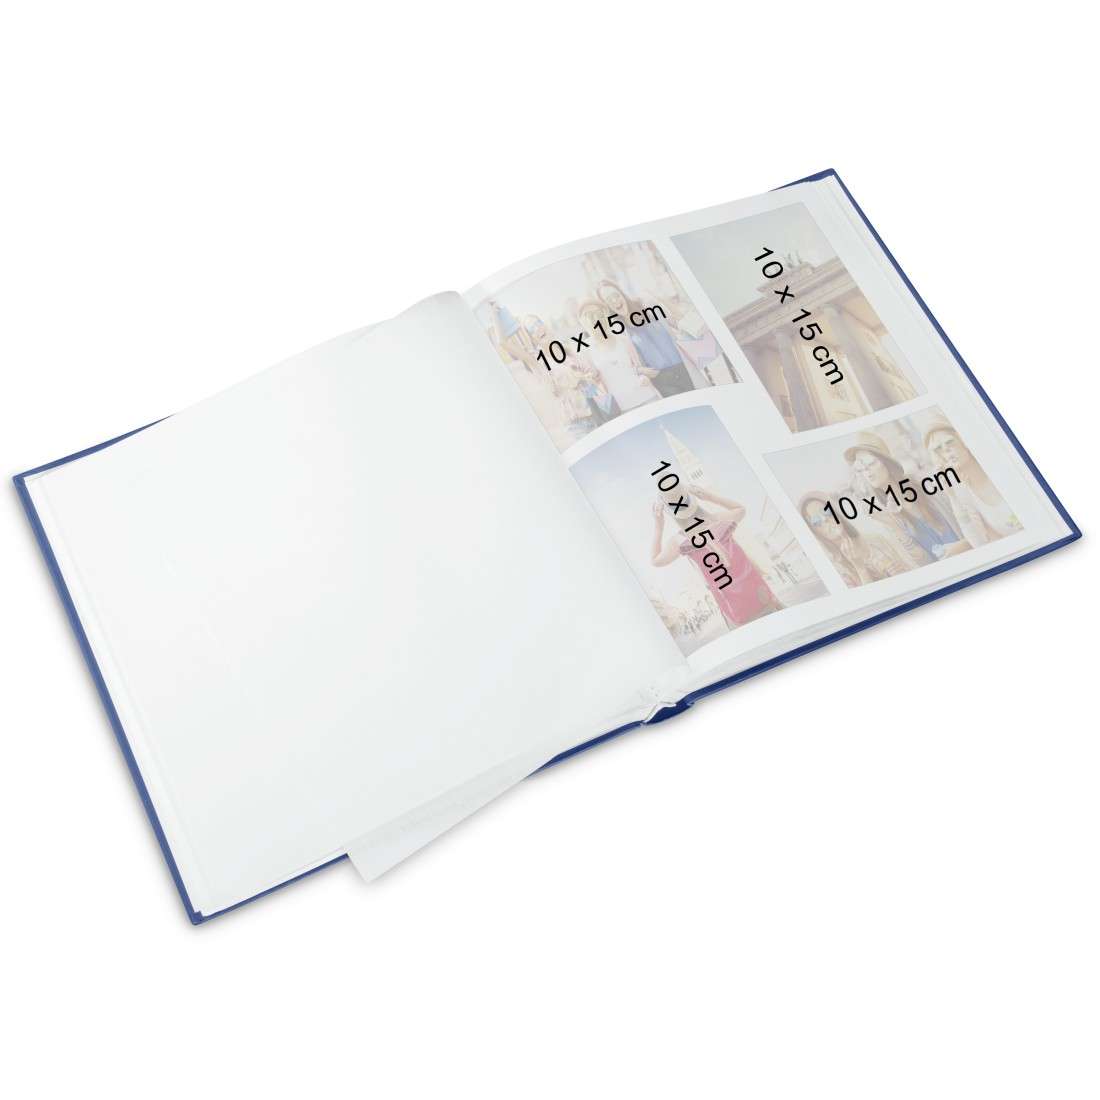 Buch-Album Catania, 29x32 cm, 60 weiße Seiten